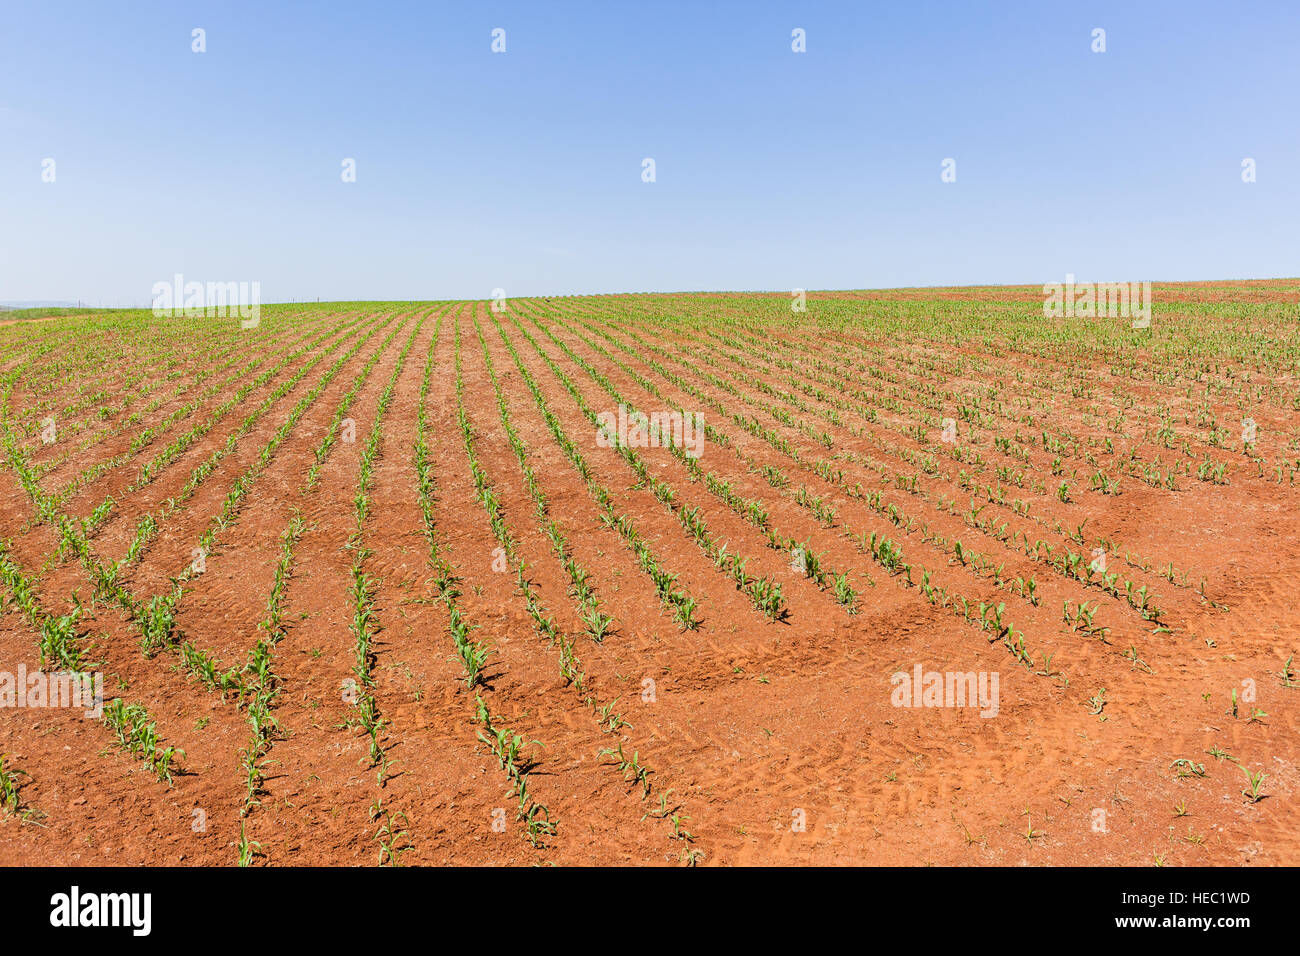 Farming landscape fields of food maize crops in summer season Stock Photo